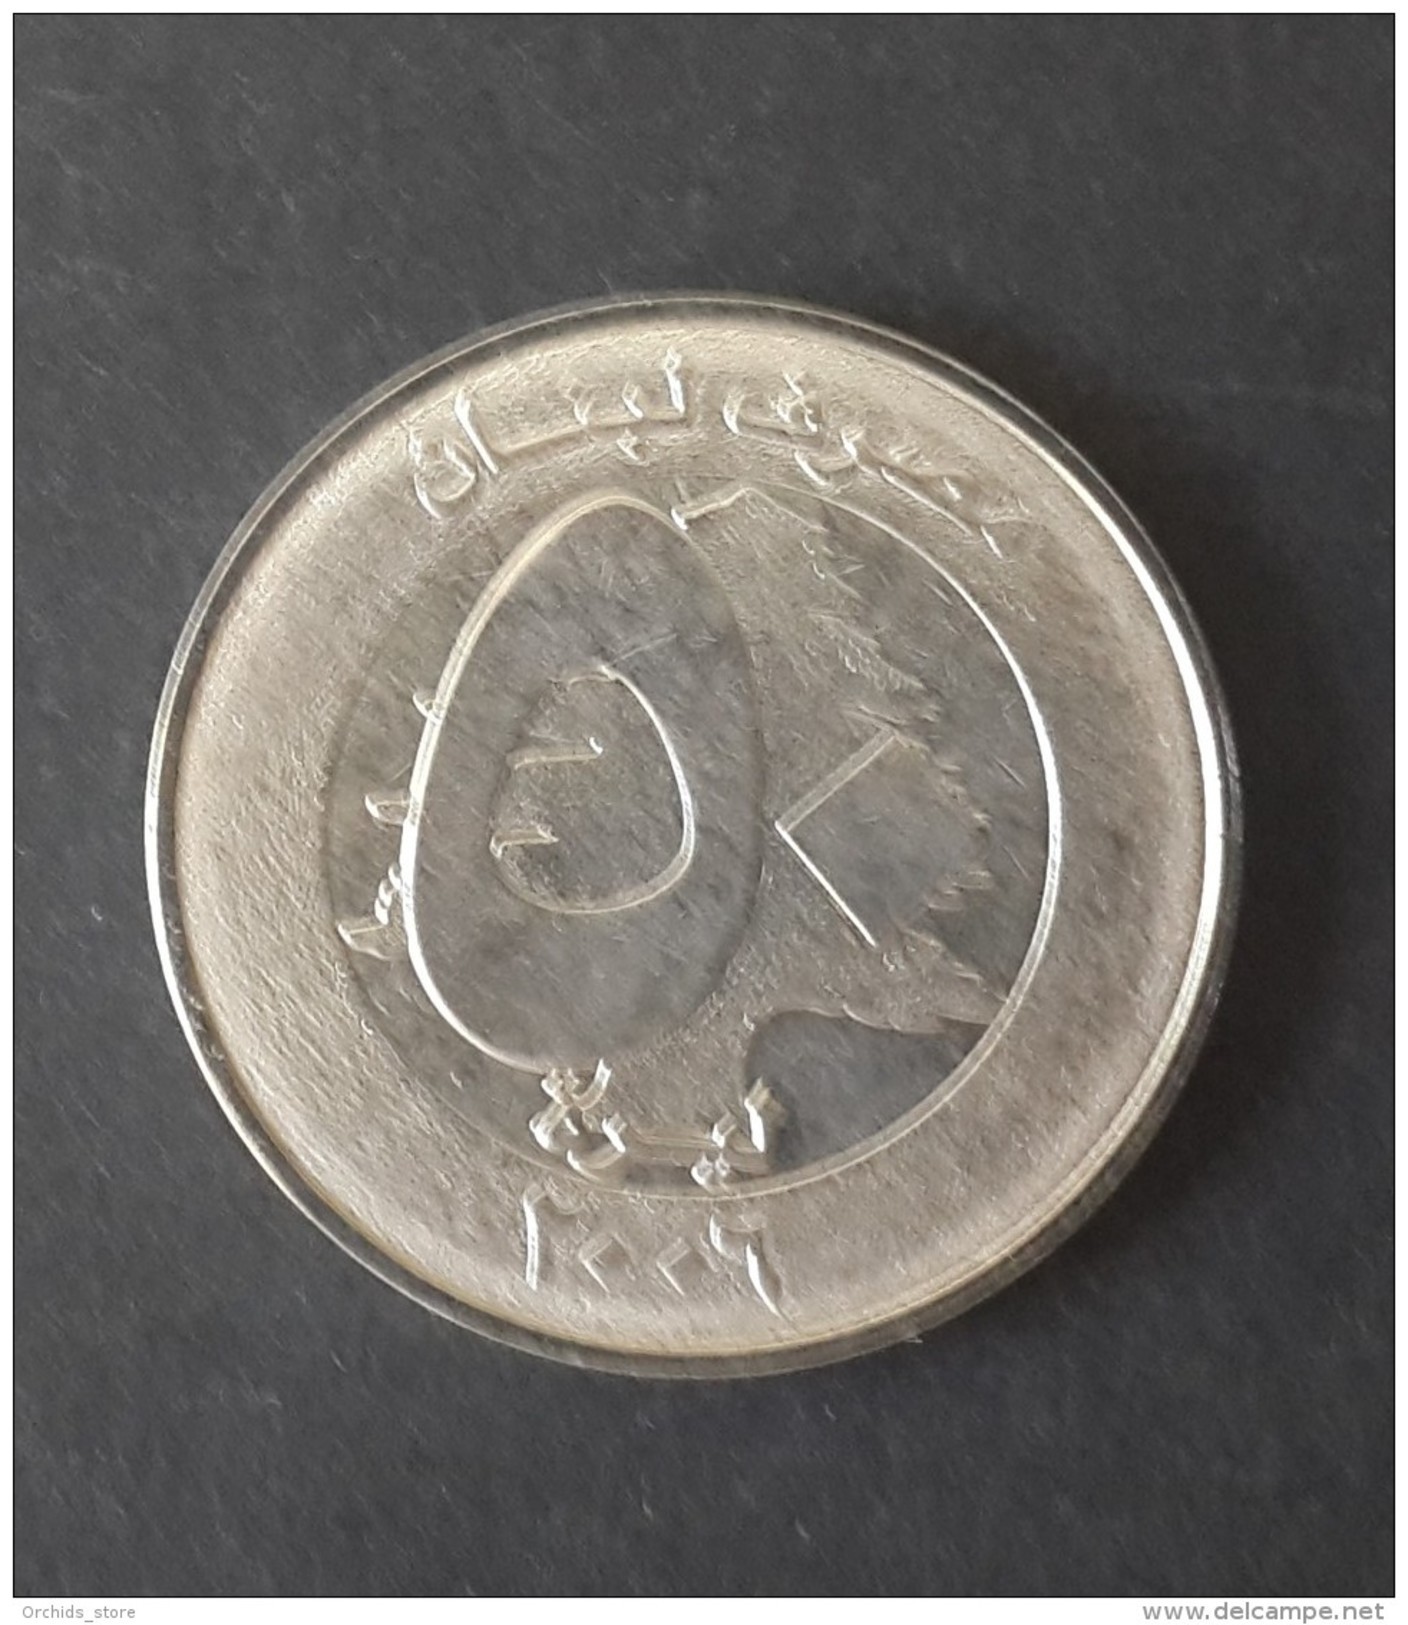 Lebanon 2006 50L Coin UNC - Libano